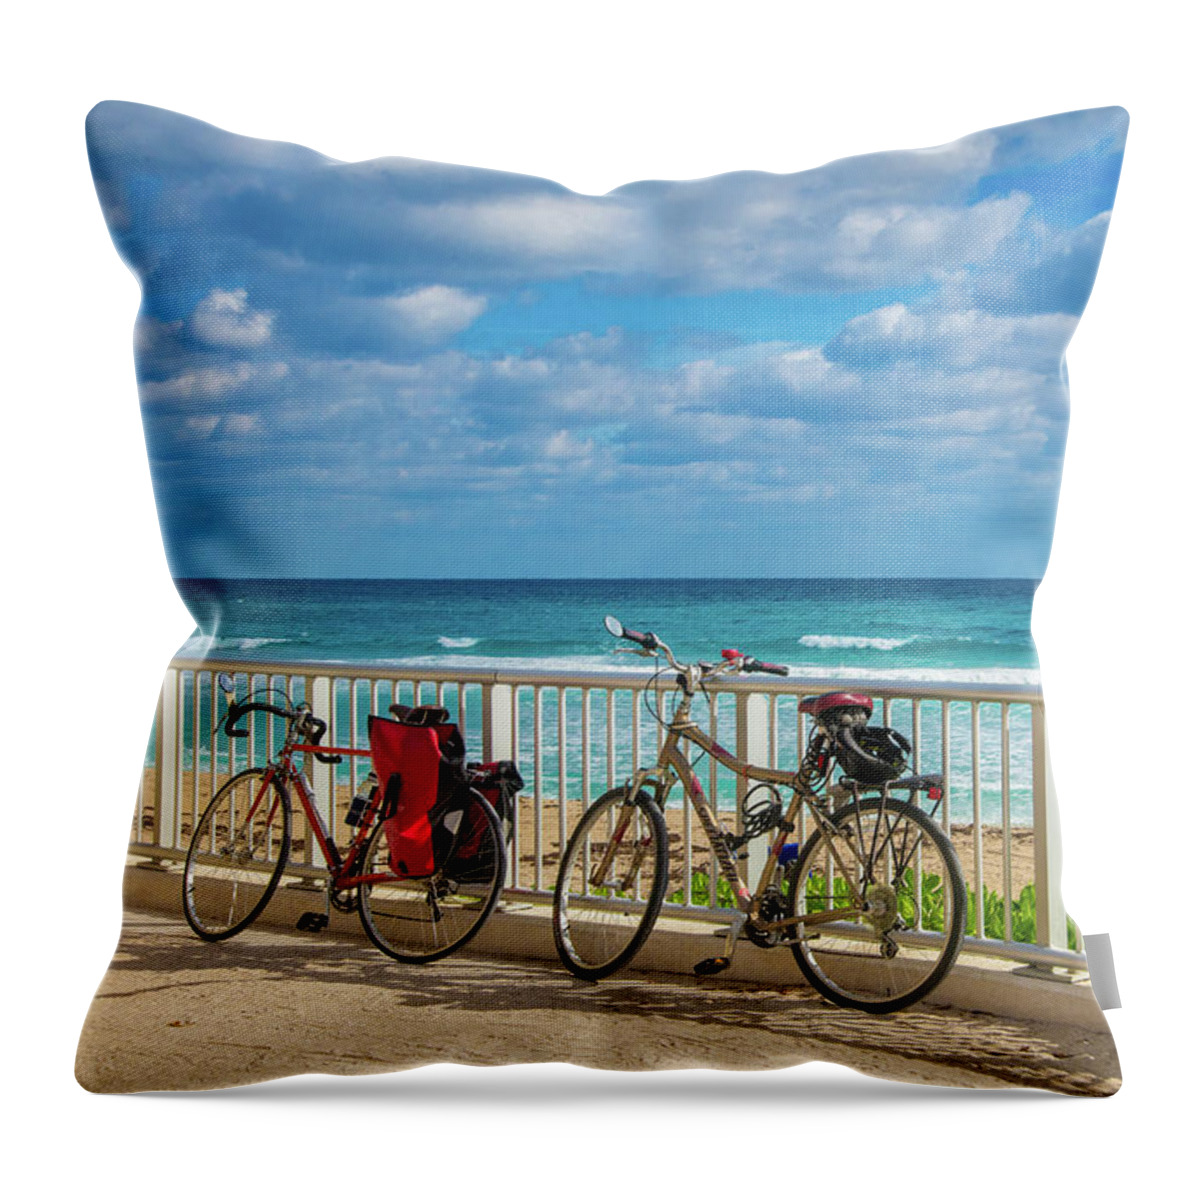 Bikes Throw Pillow featuring the photograph Bike Break at the Beach by Lynn Bauer